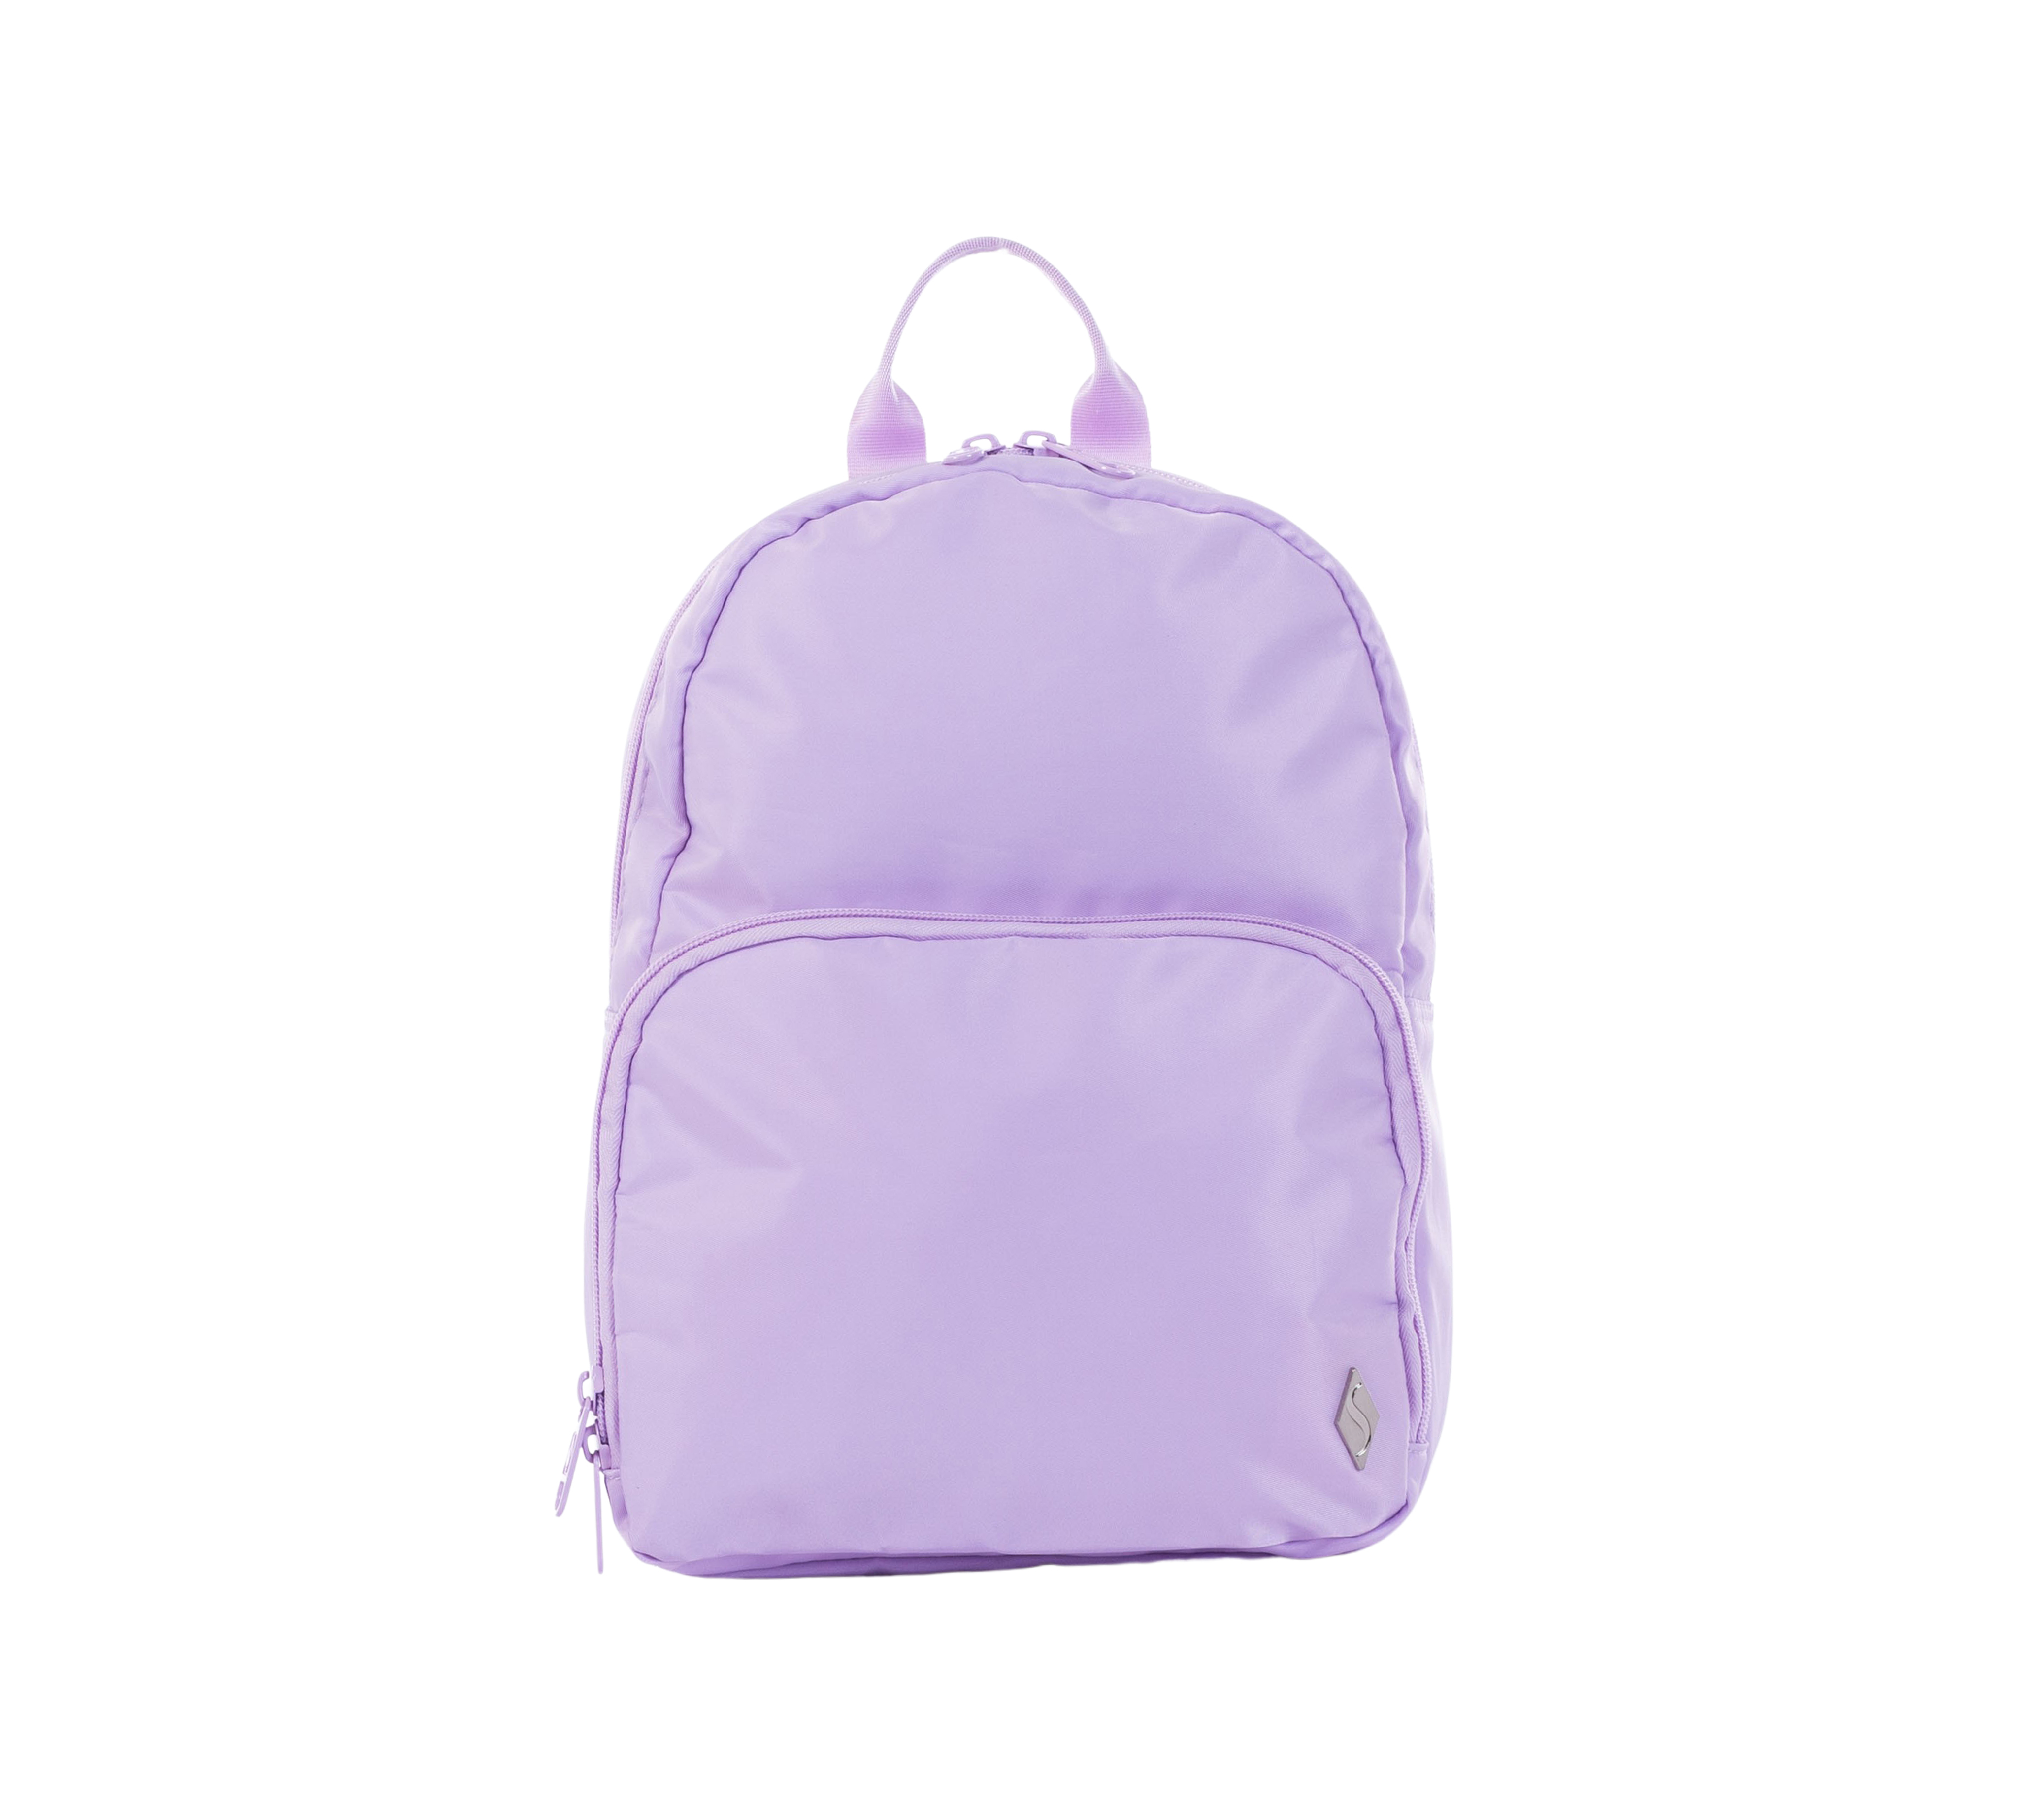 Skechers Accessories Jetsetter Backpack Lavender Nylon